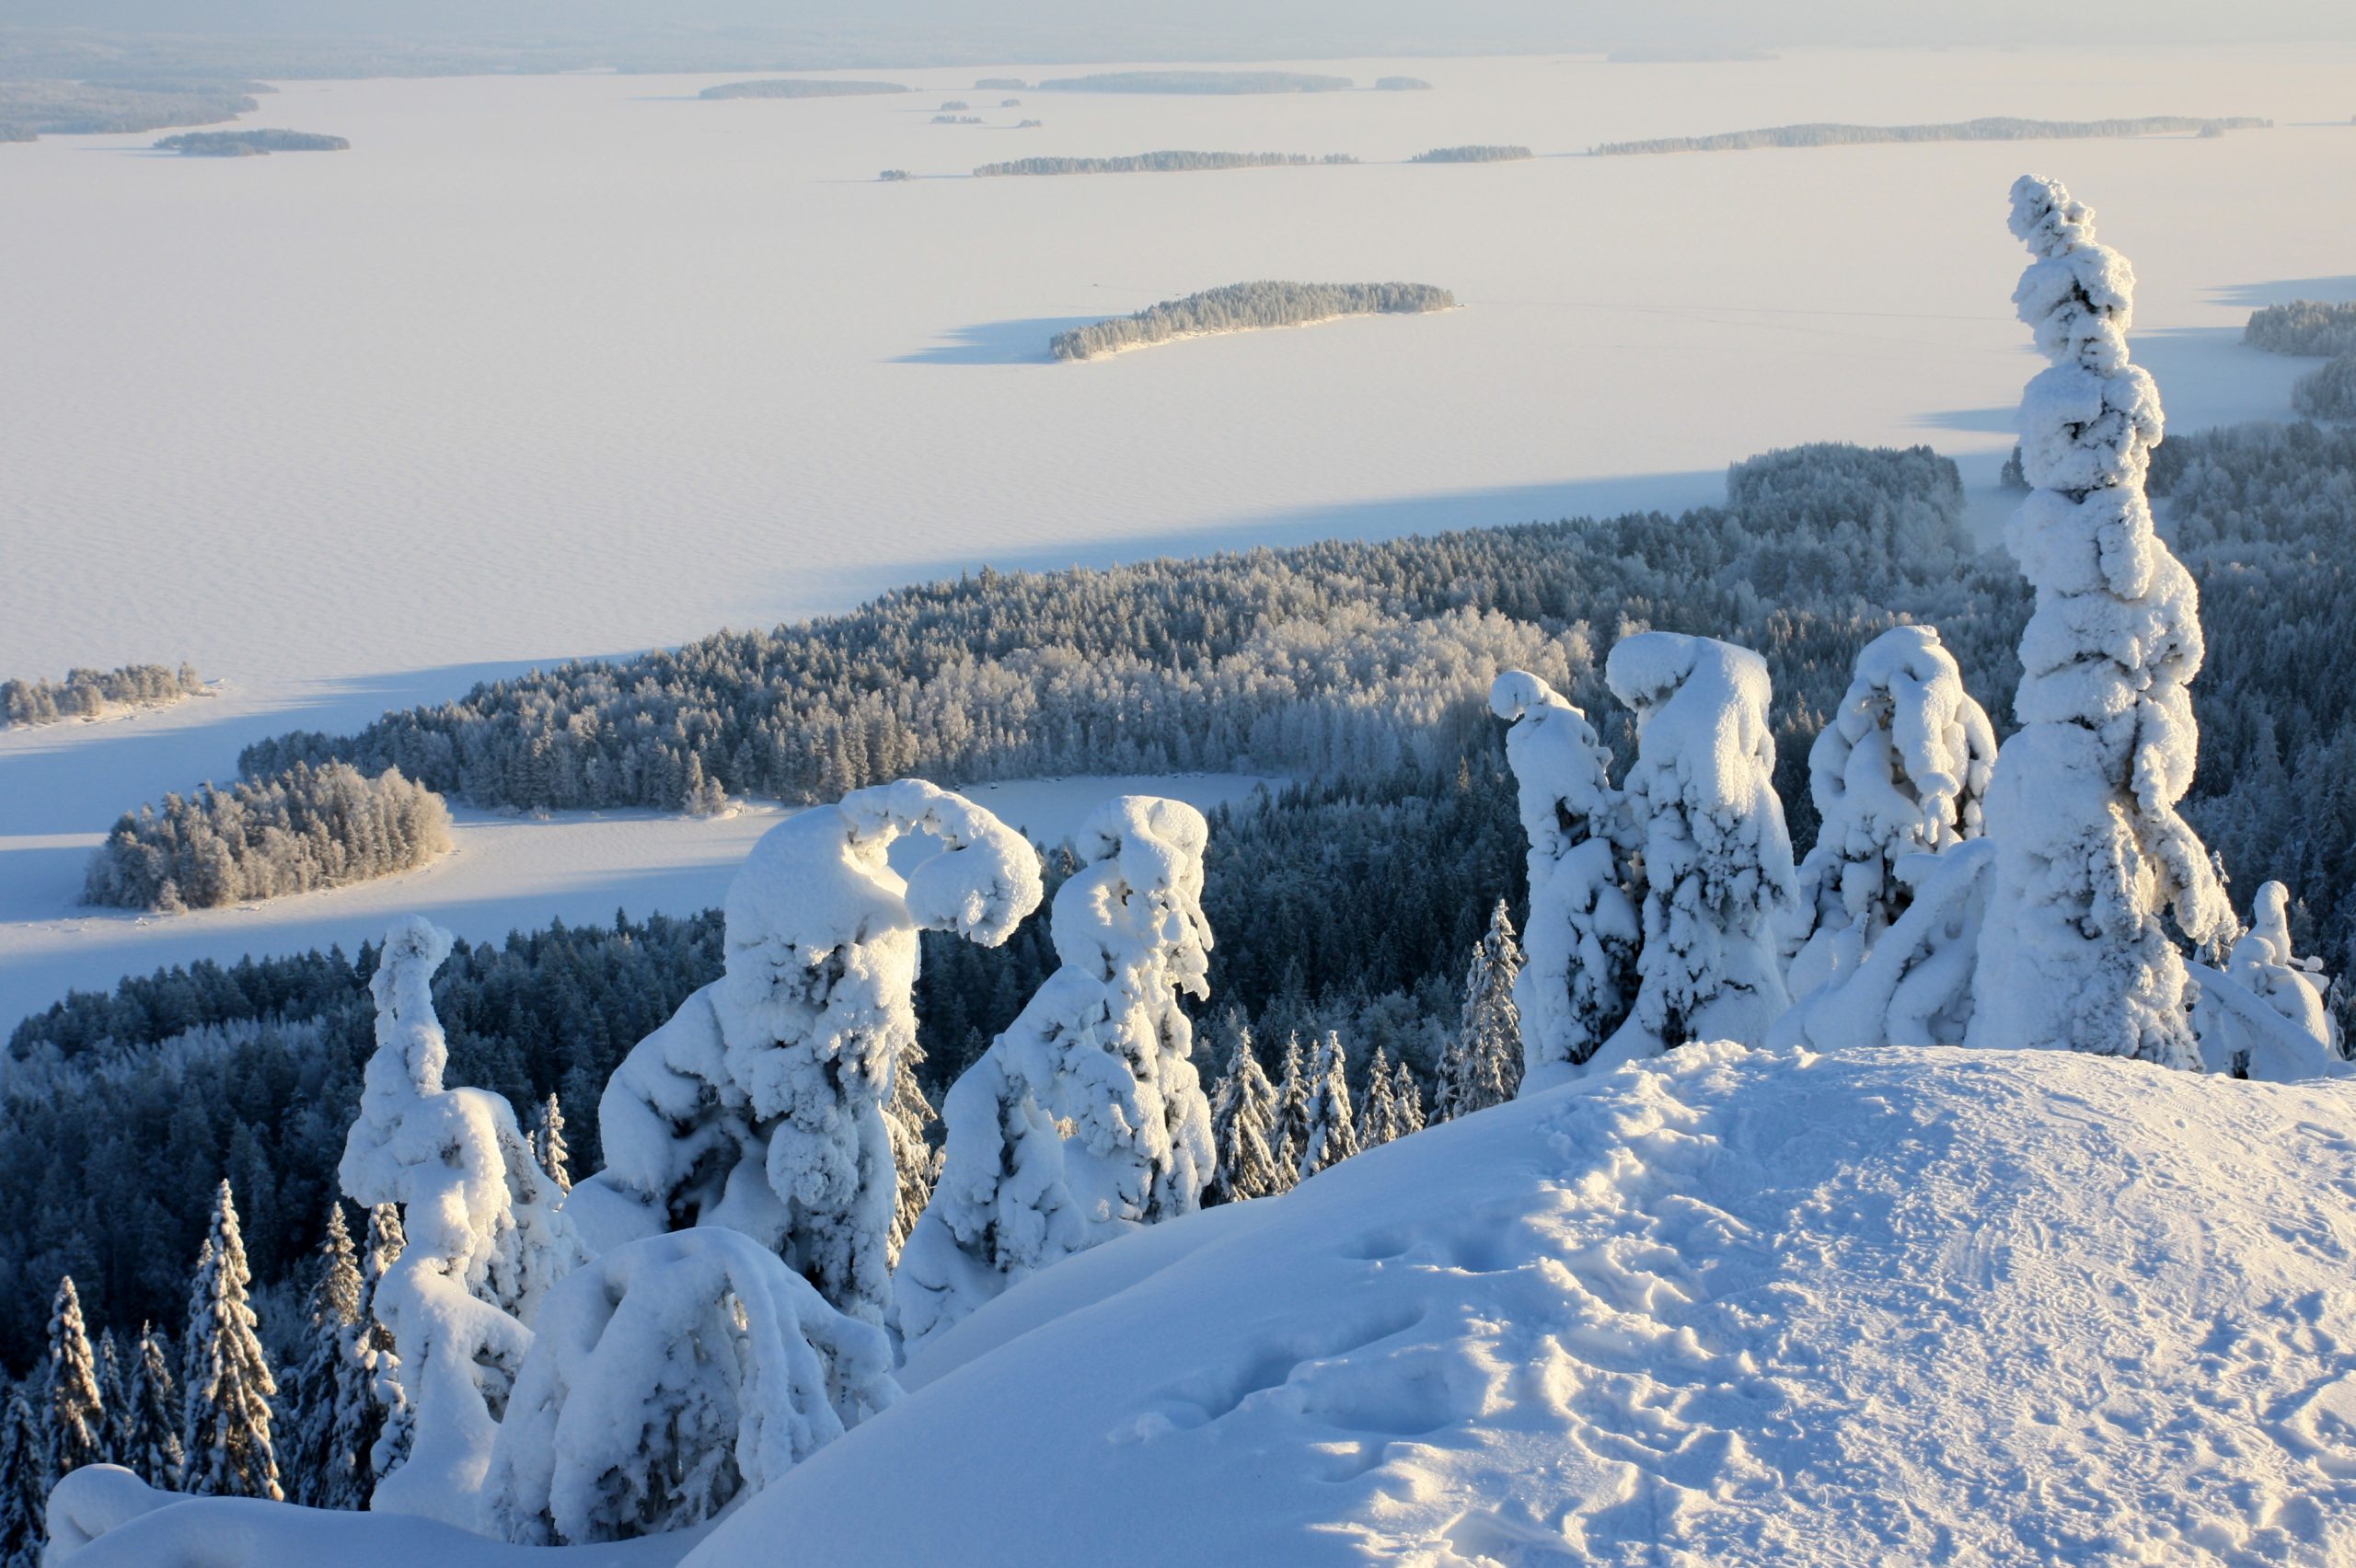 Talvinen kuva Suomen luonnosta kuvattuna ylhäältä tunturilta tai korkealta mäeltä kohti jäätynyttä järveä. Aurinko paistaa oikealta ja puut ovat lumenpeitossa. Avainsanoja: talvi, luonto, retki, rauha, ympäristö, loma, hiihtoloma